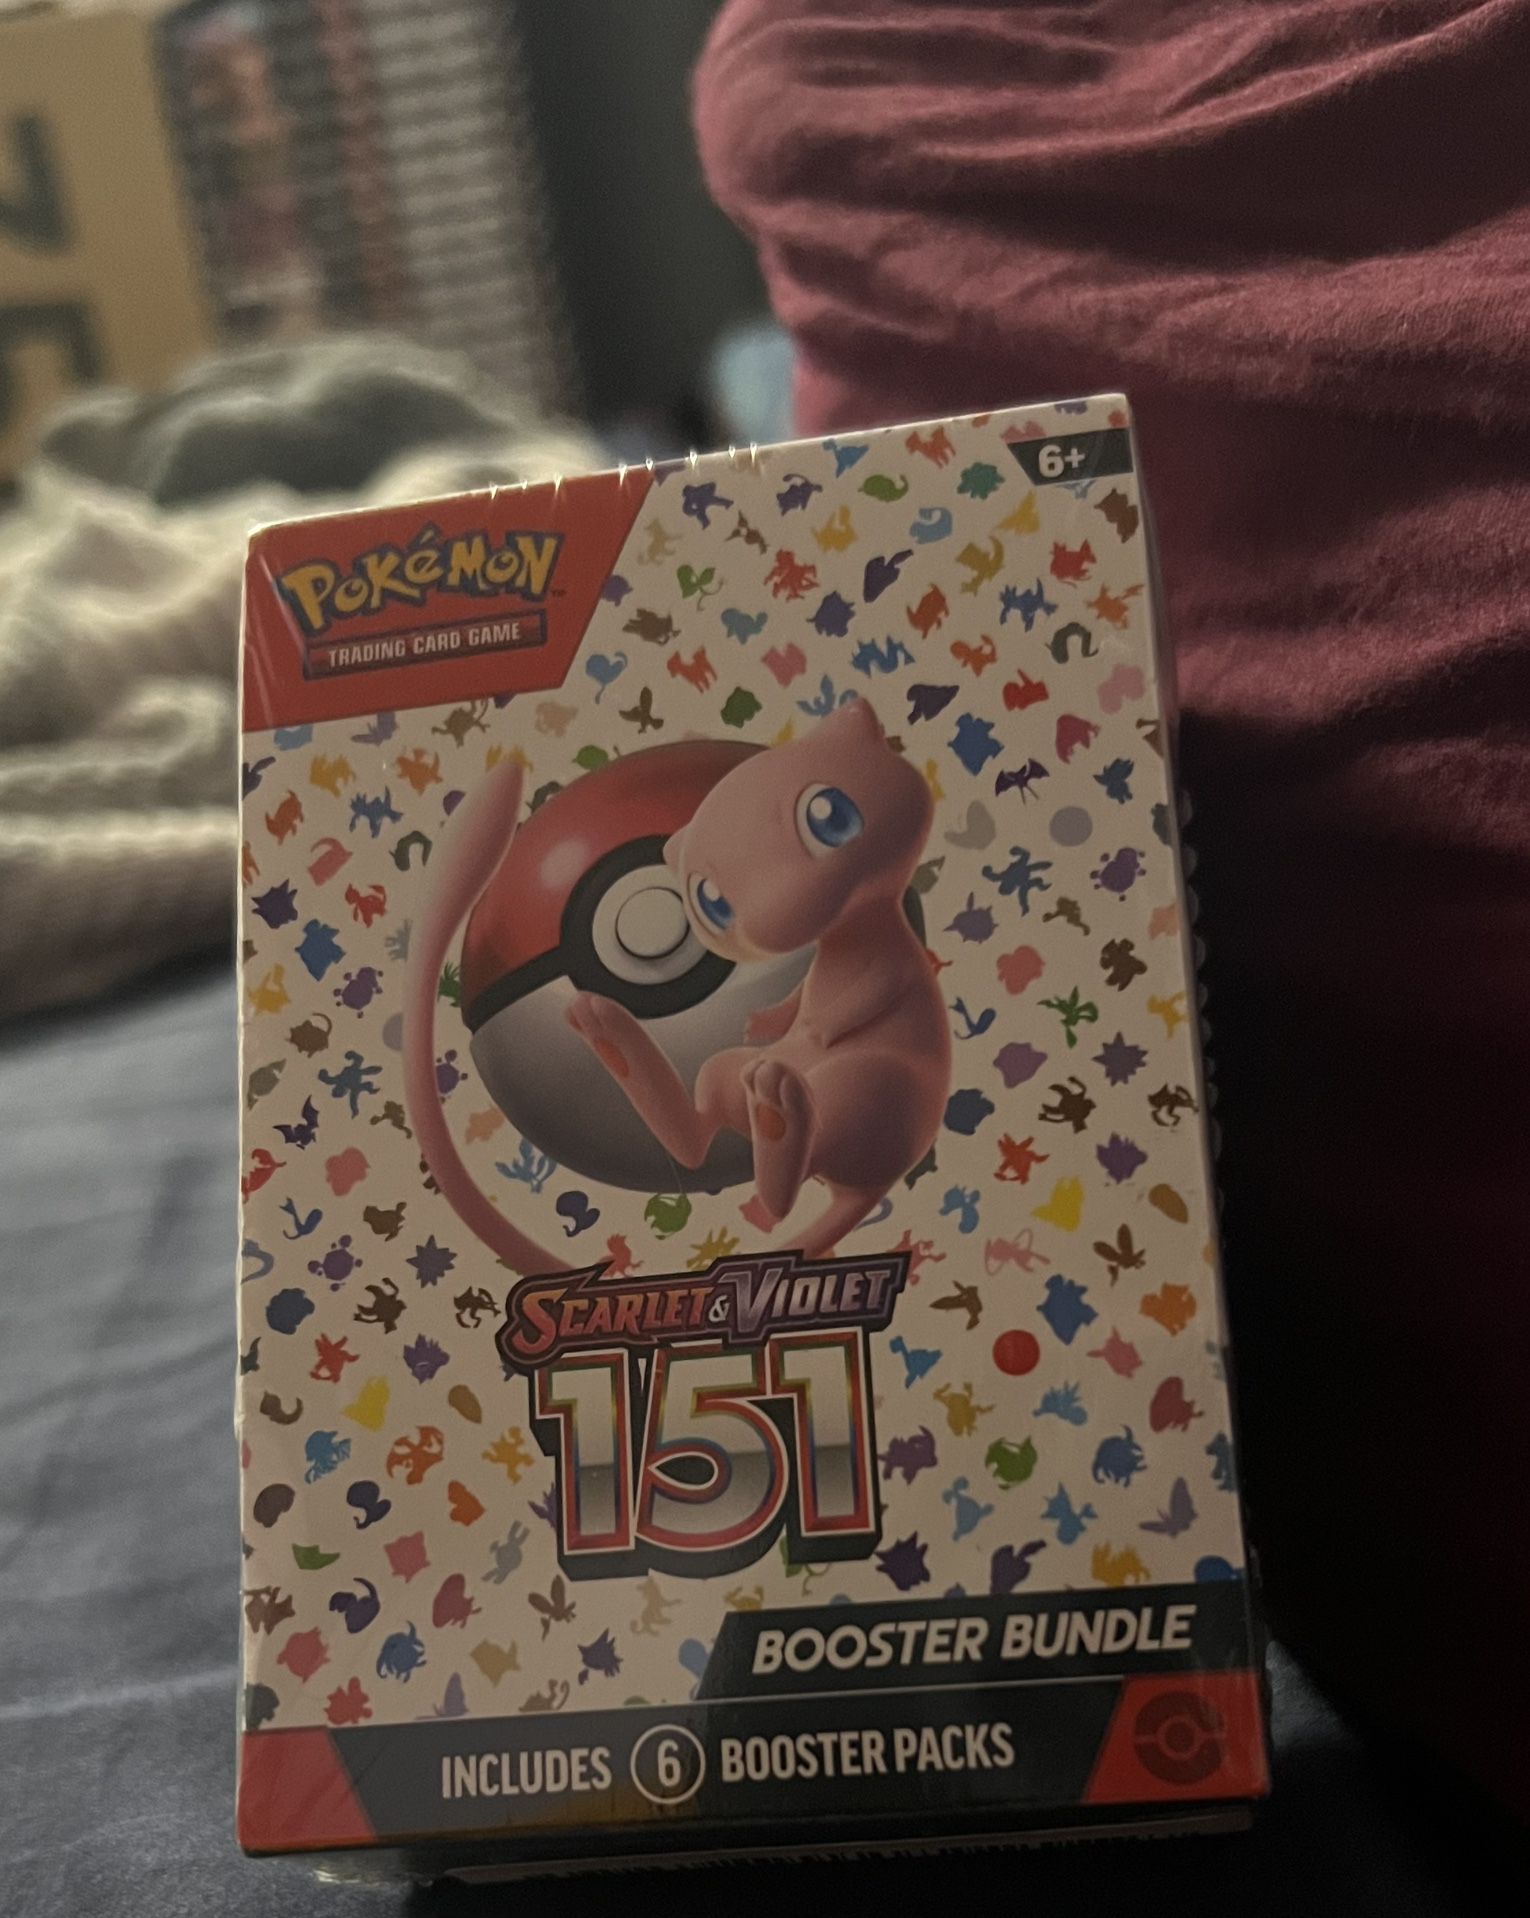 Pokémon Scarlet & Violet 151 Booster Bundle Sealed